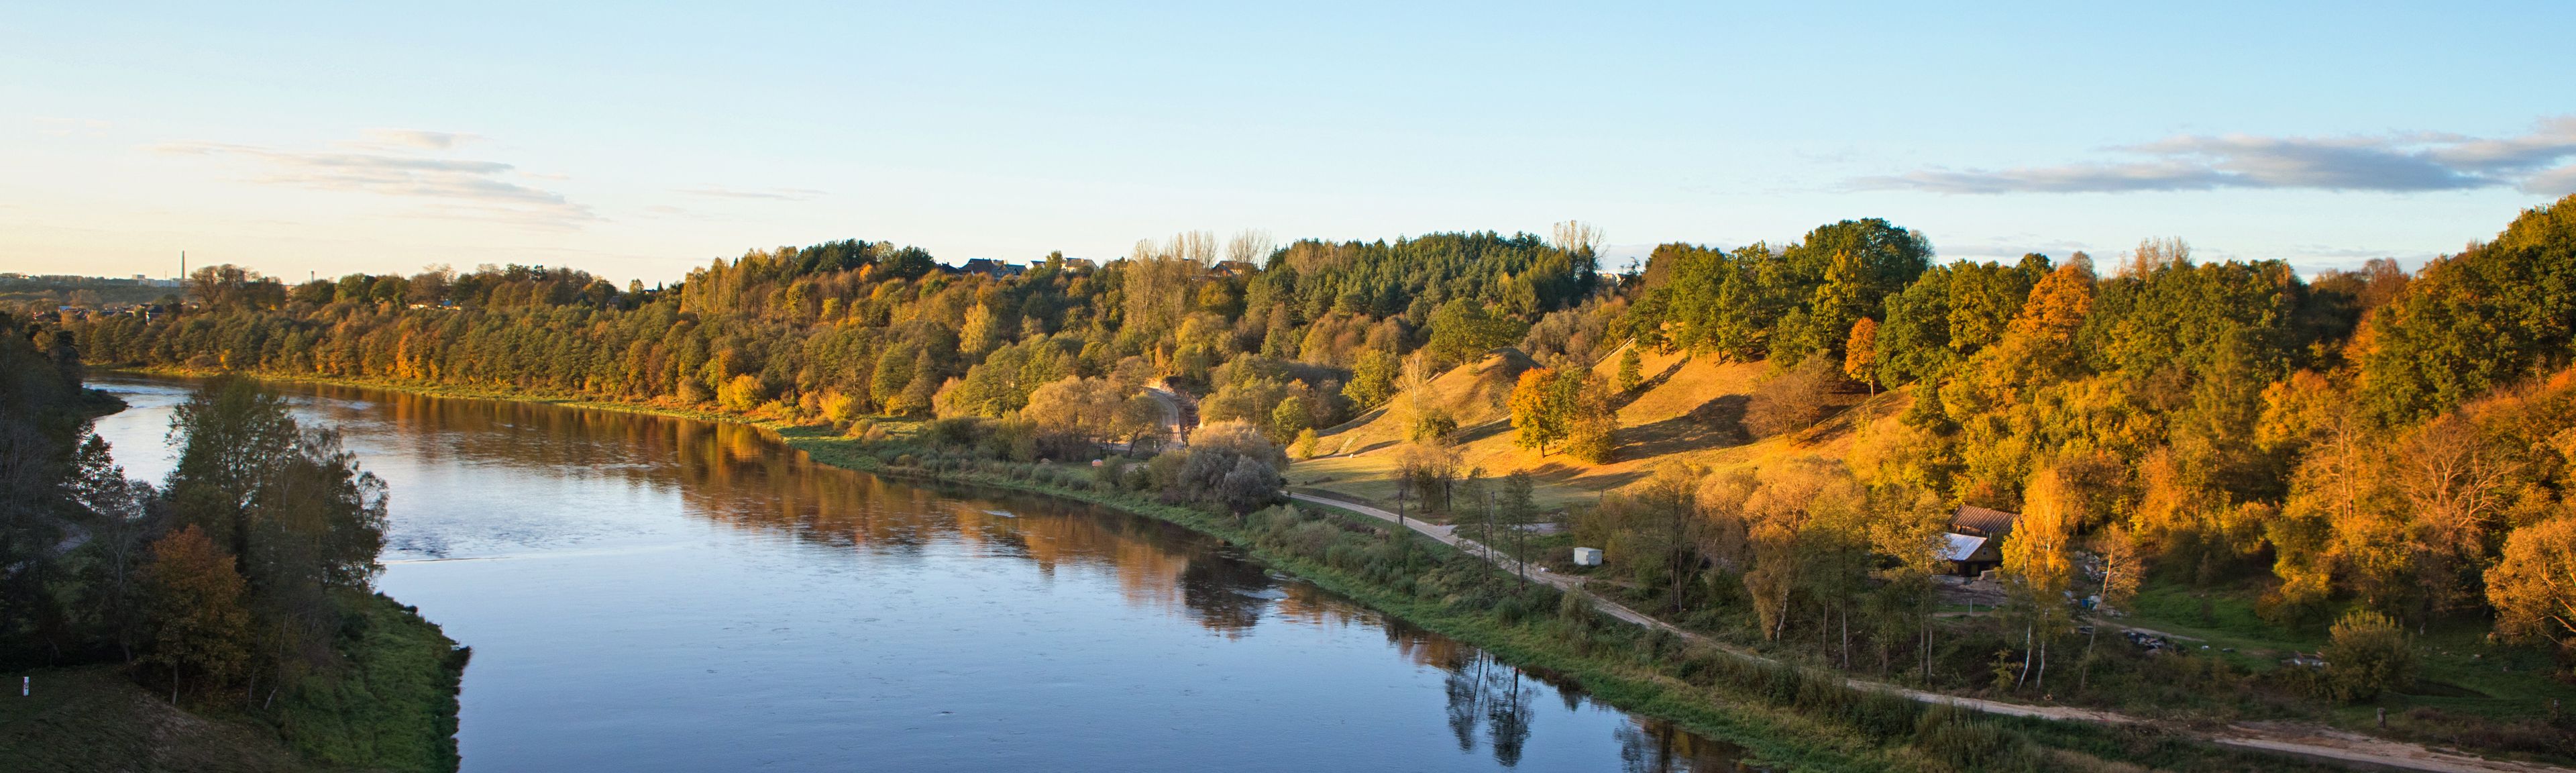 Blick auf einen Fluss und die atemberaubende Natur in Litauen